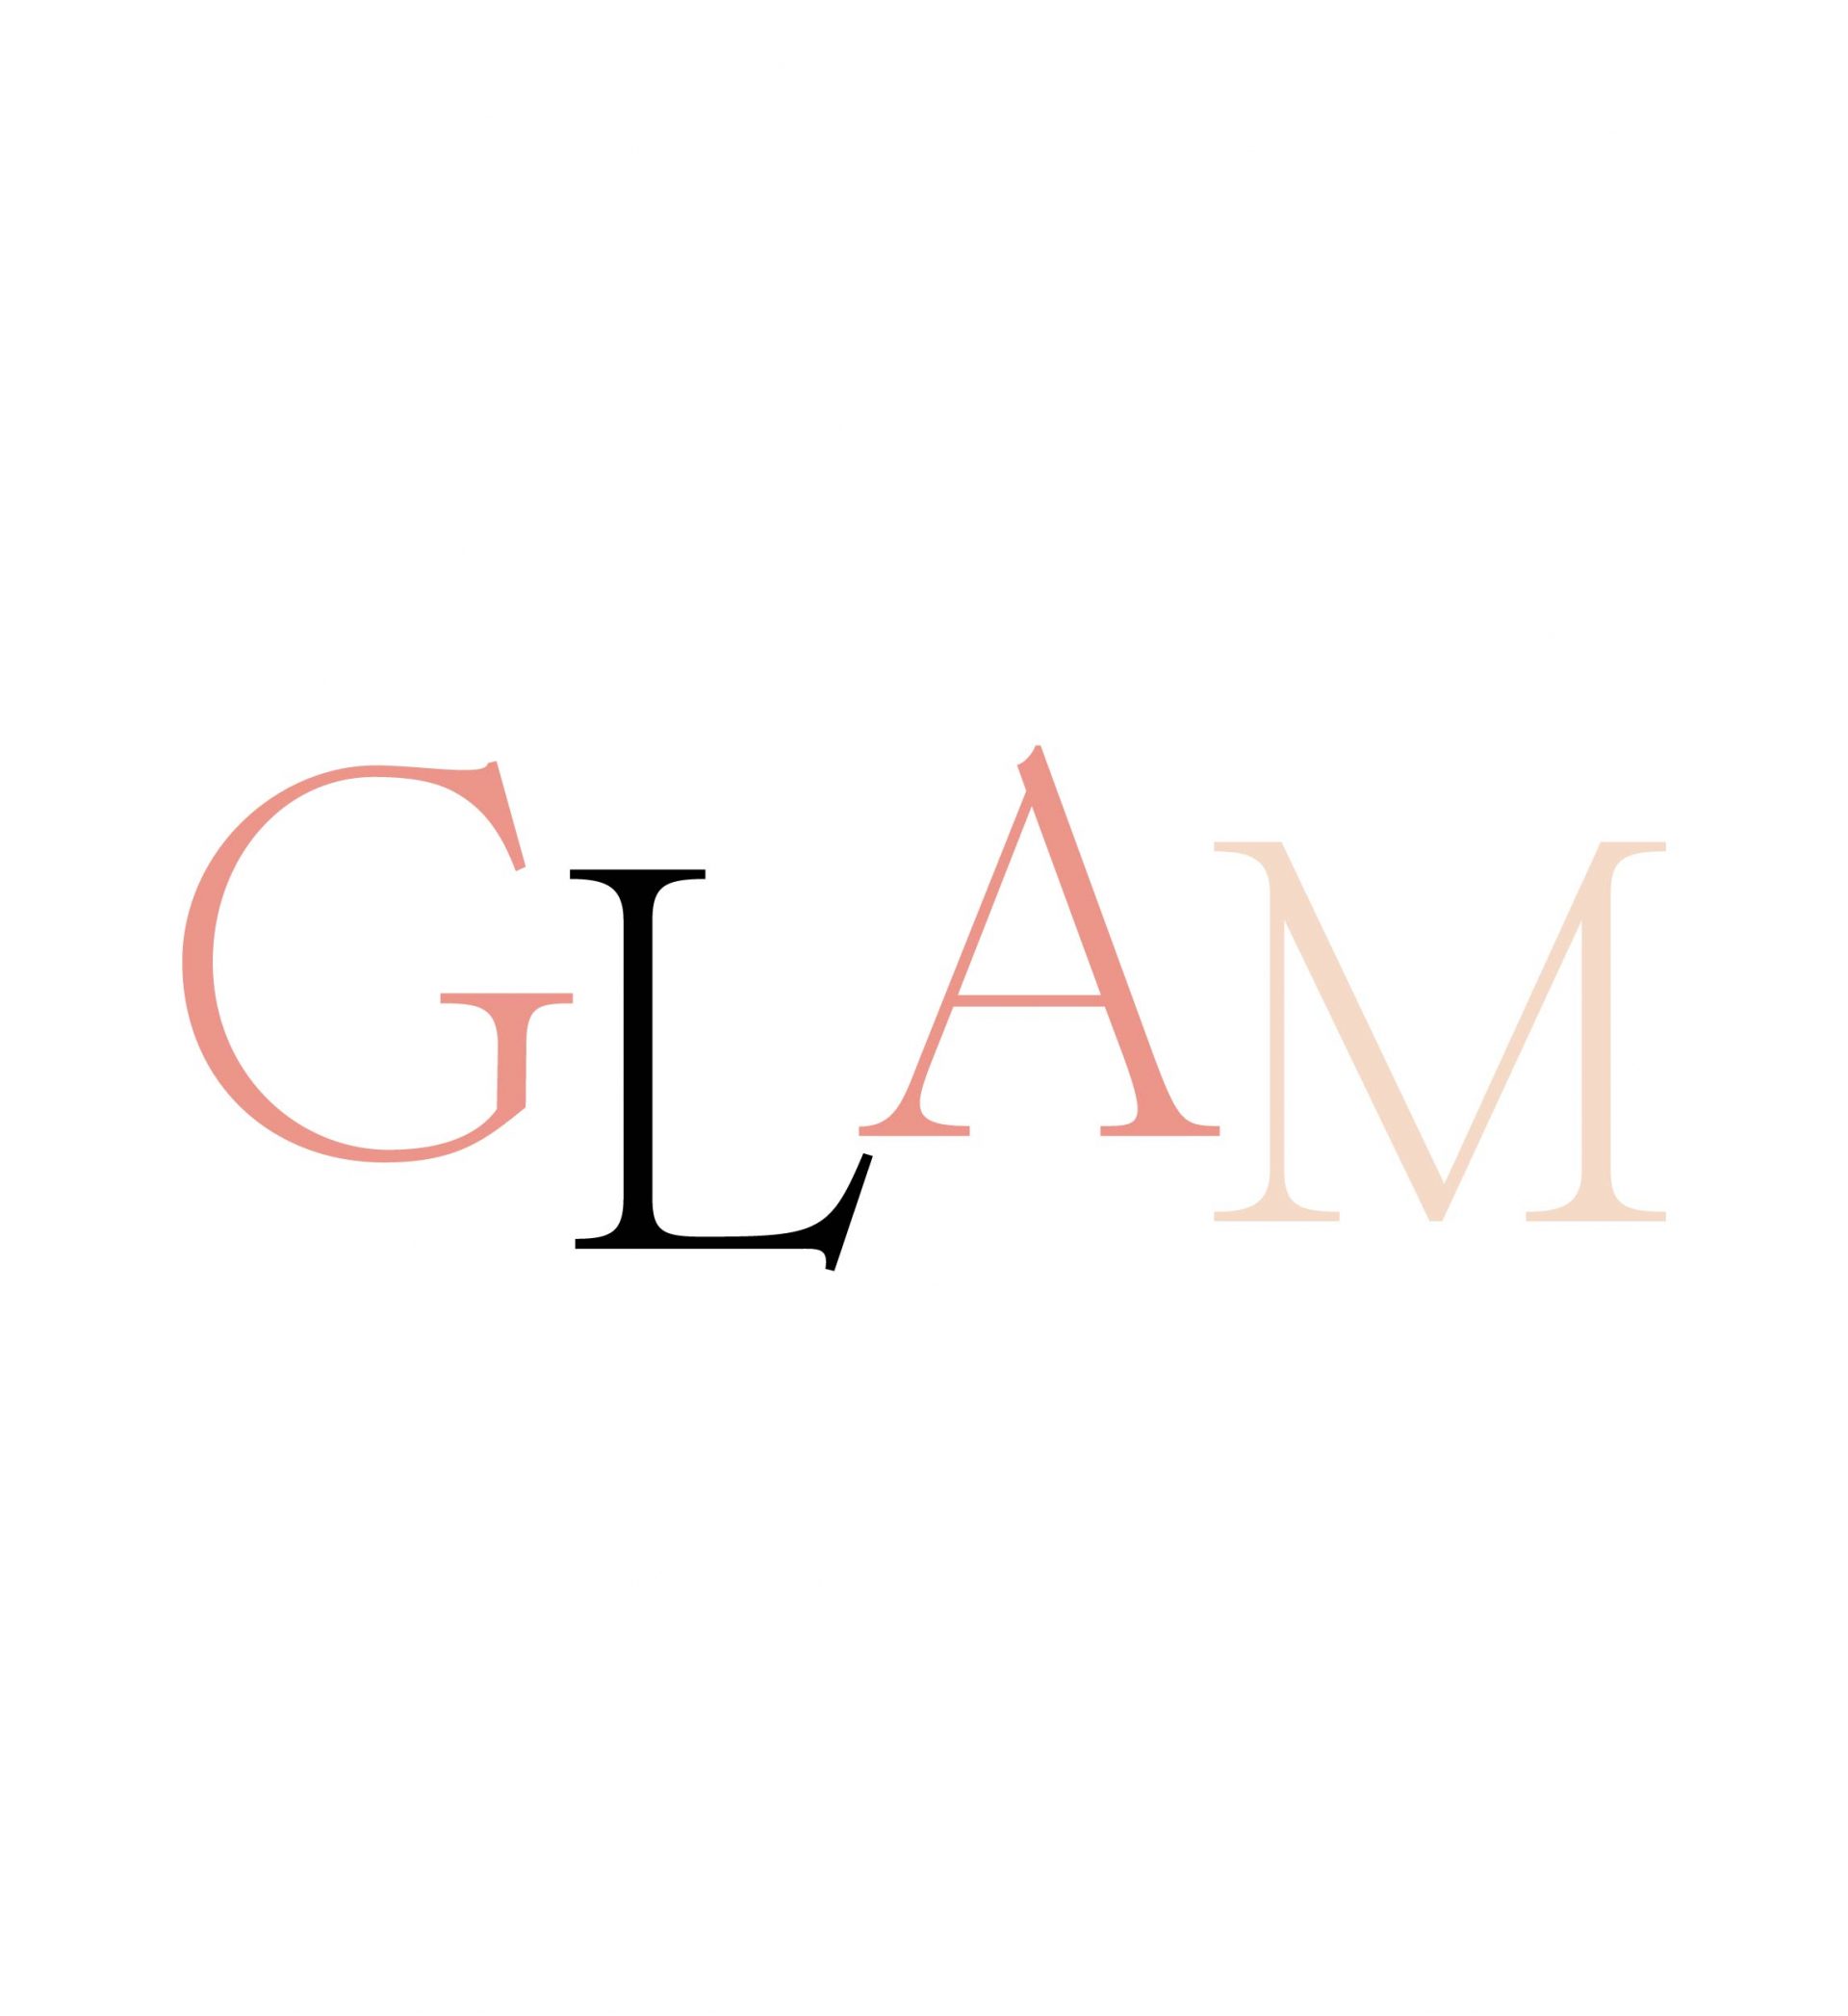 Cos’è lo stile glam?